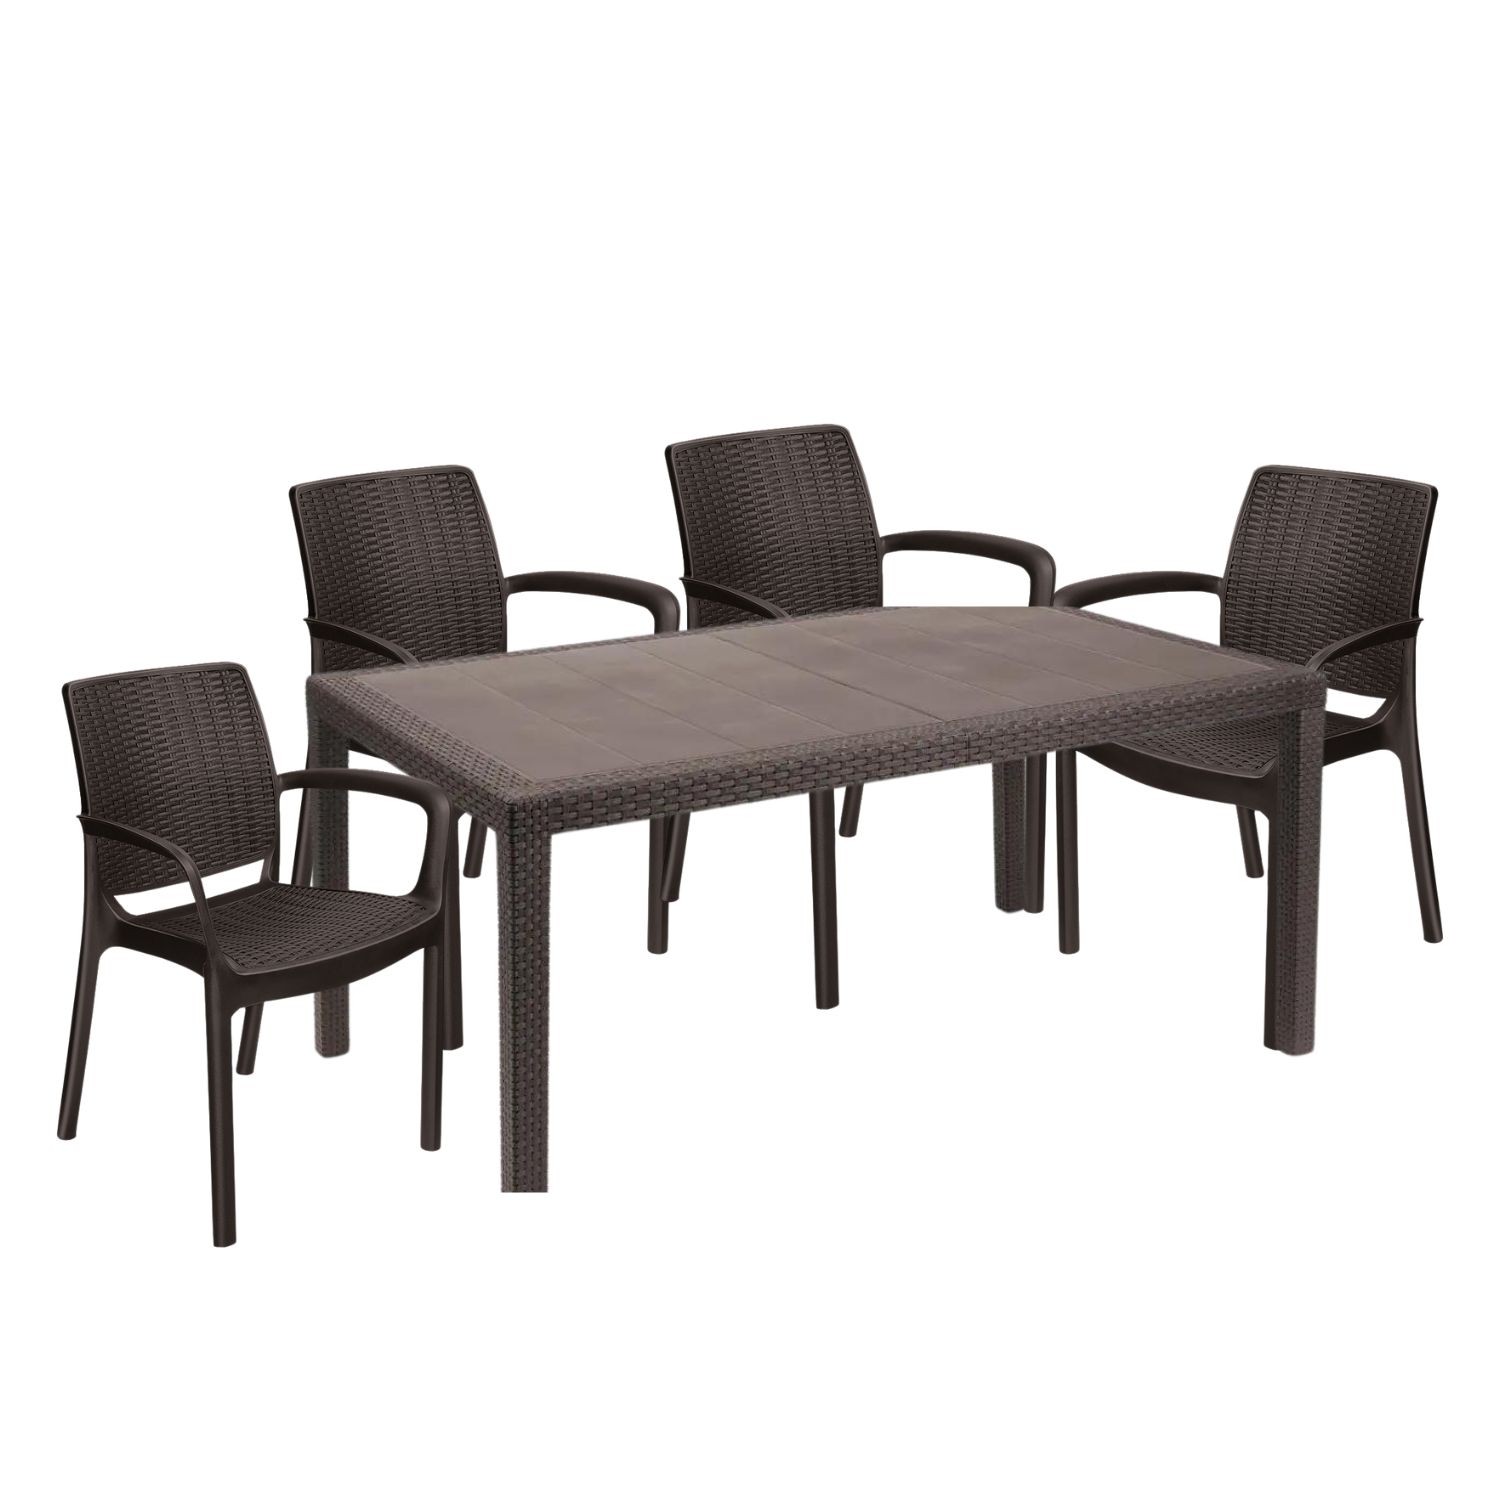 Комплект мебели Elfplast на 6 персон RT0270 стол обеденный + 4 стула цвет коричневый